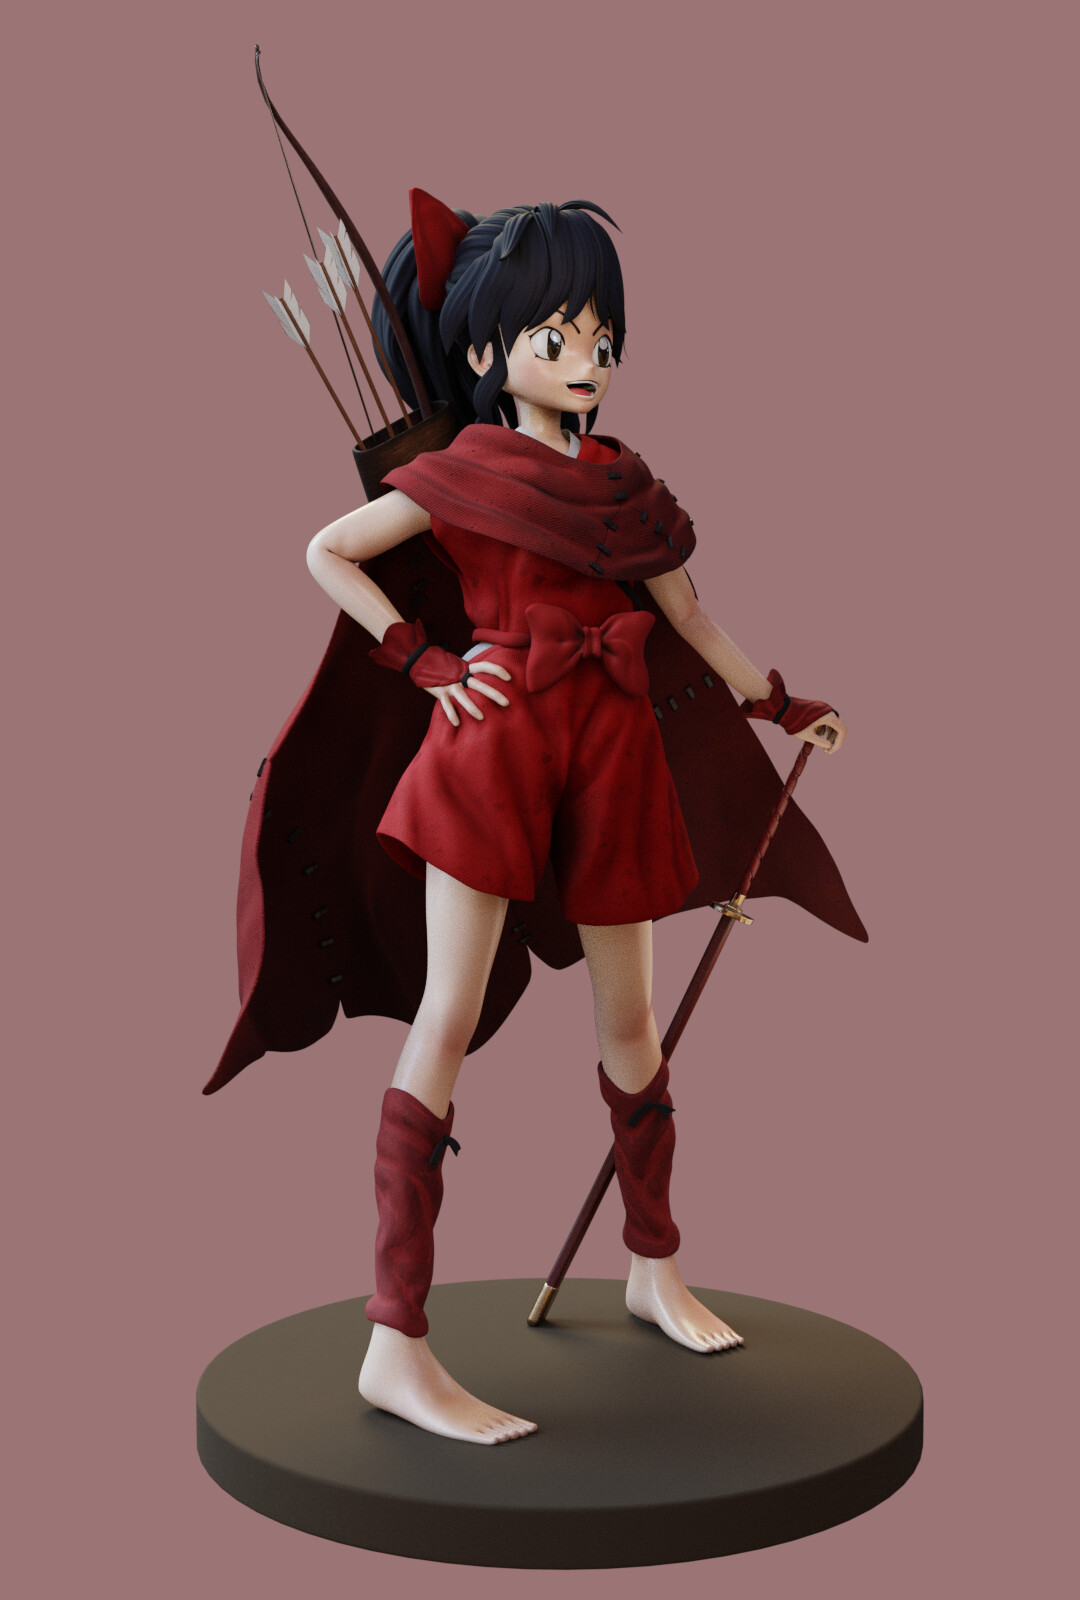 InuYasha Hanyo no Yashahime The Half-Demon Princess Moroha cosplay